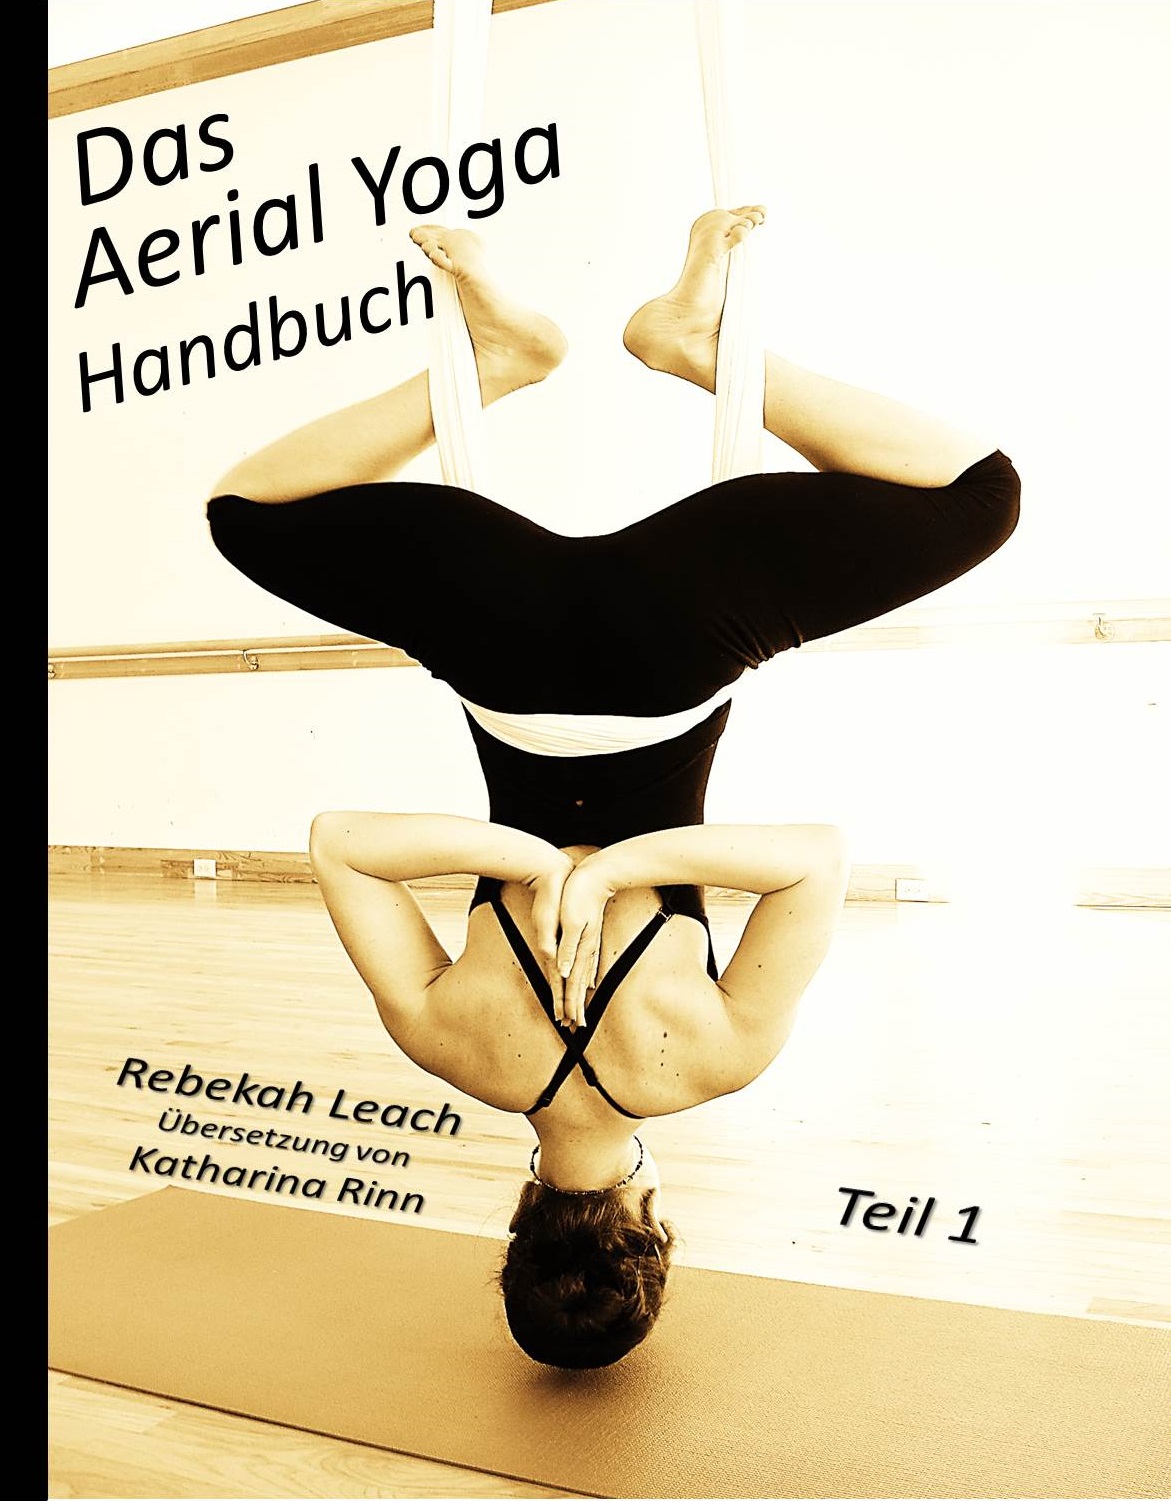 Das Aerial Yoga Handbuch Teil 1 is Here! www.aerialdancing pic